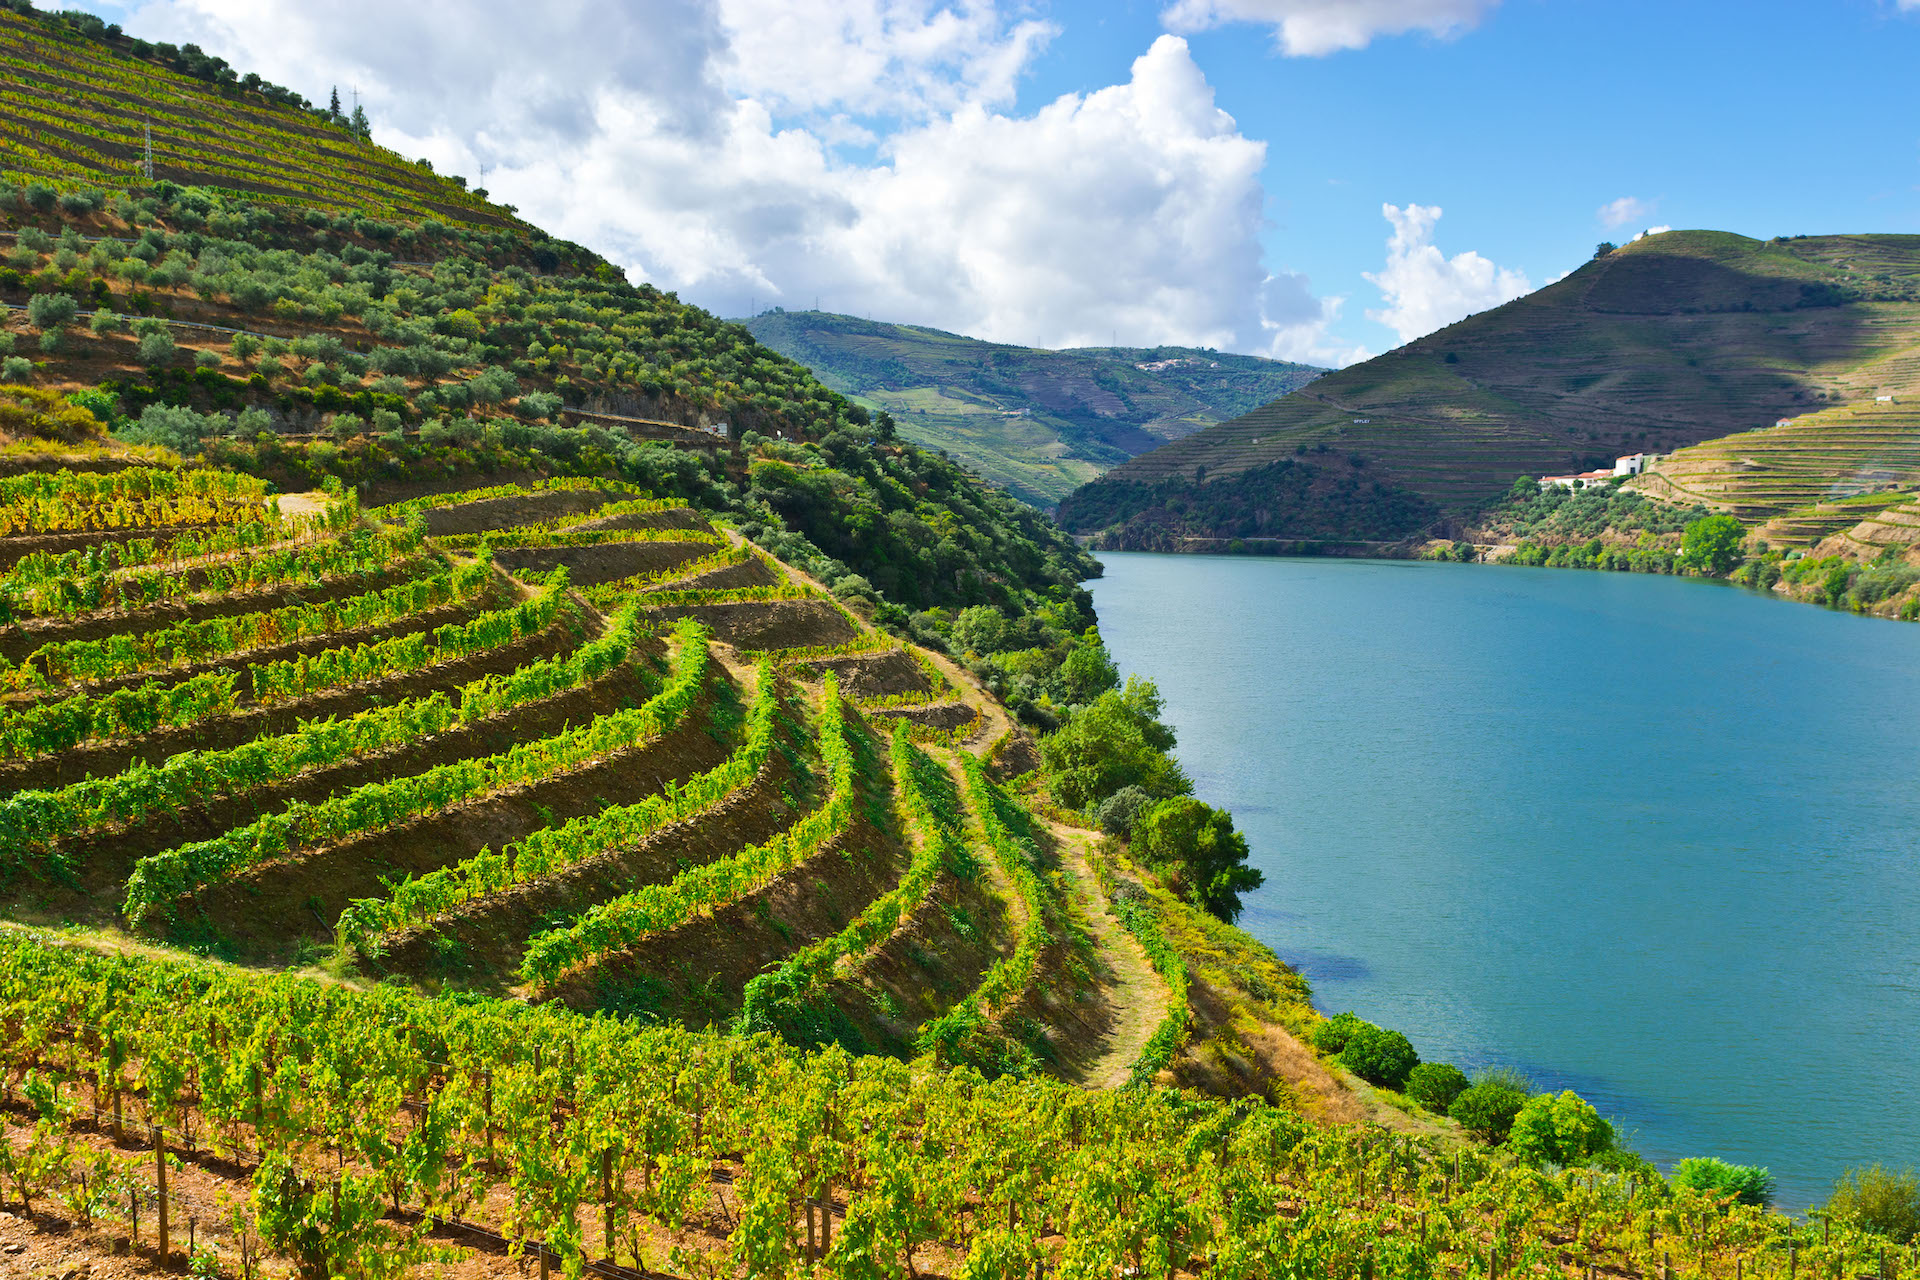 Os turistas ficam encantados com a paisagem do vale do Douro, onde o homem construiu plataformas para plantar vinhas nas encostas/GB Imagem